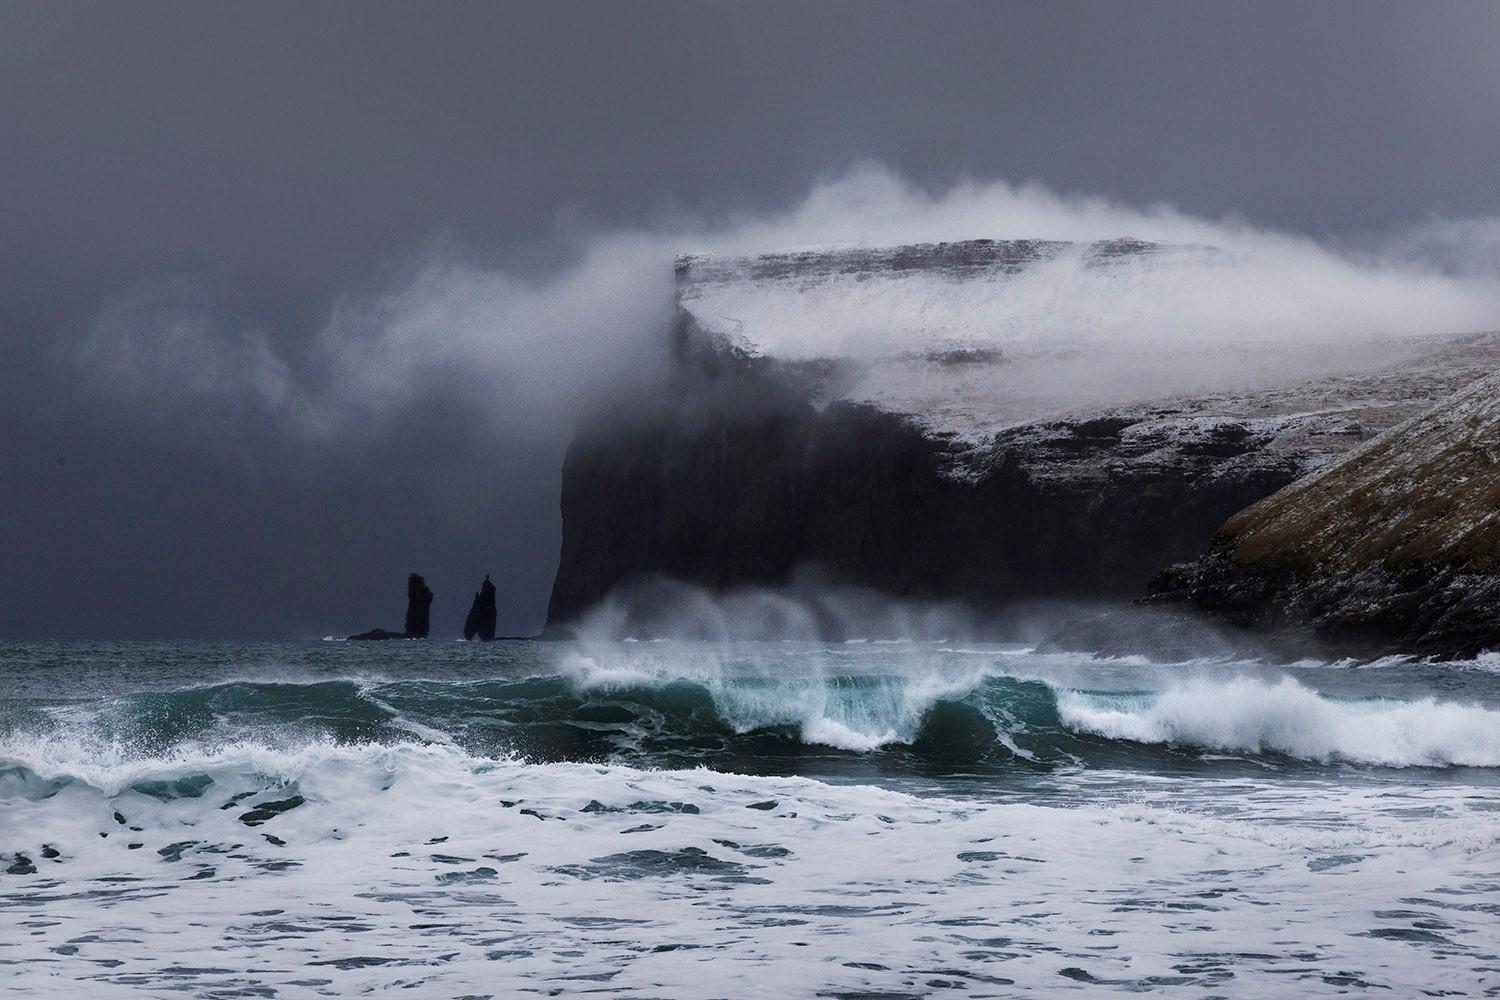 Waves est une photographie en édition limitée de l'artiste contemporain Christophe Jacrot. Il fait partie de la série "Turbulent Faroe islands". La mer déchaînée et le nuage qui provoque le brouillard sur la falaise de cette photographie magnifient